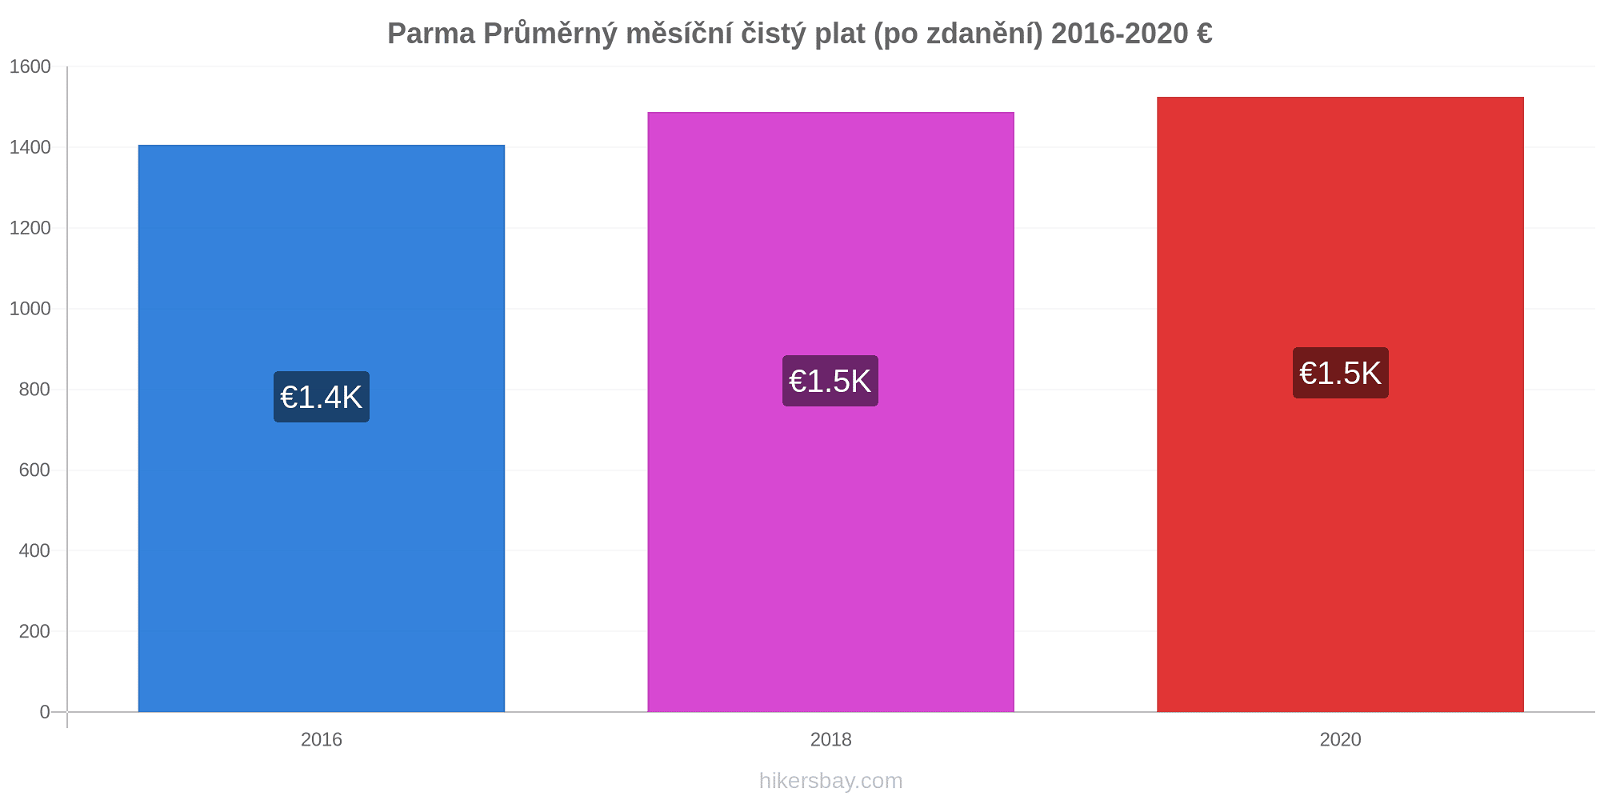 Parma změny cen Průměrný měsíční čistý plat (po zdanění) hikersbay.com